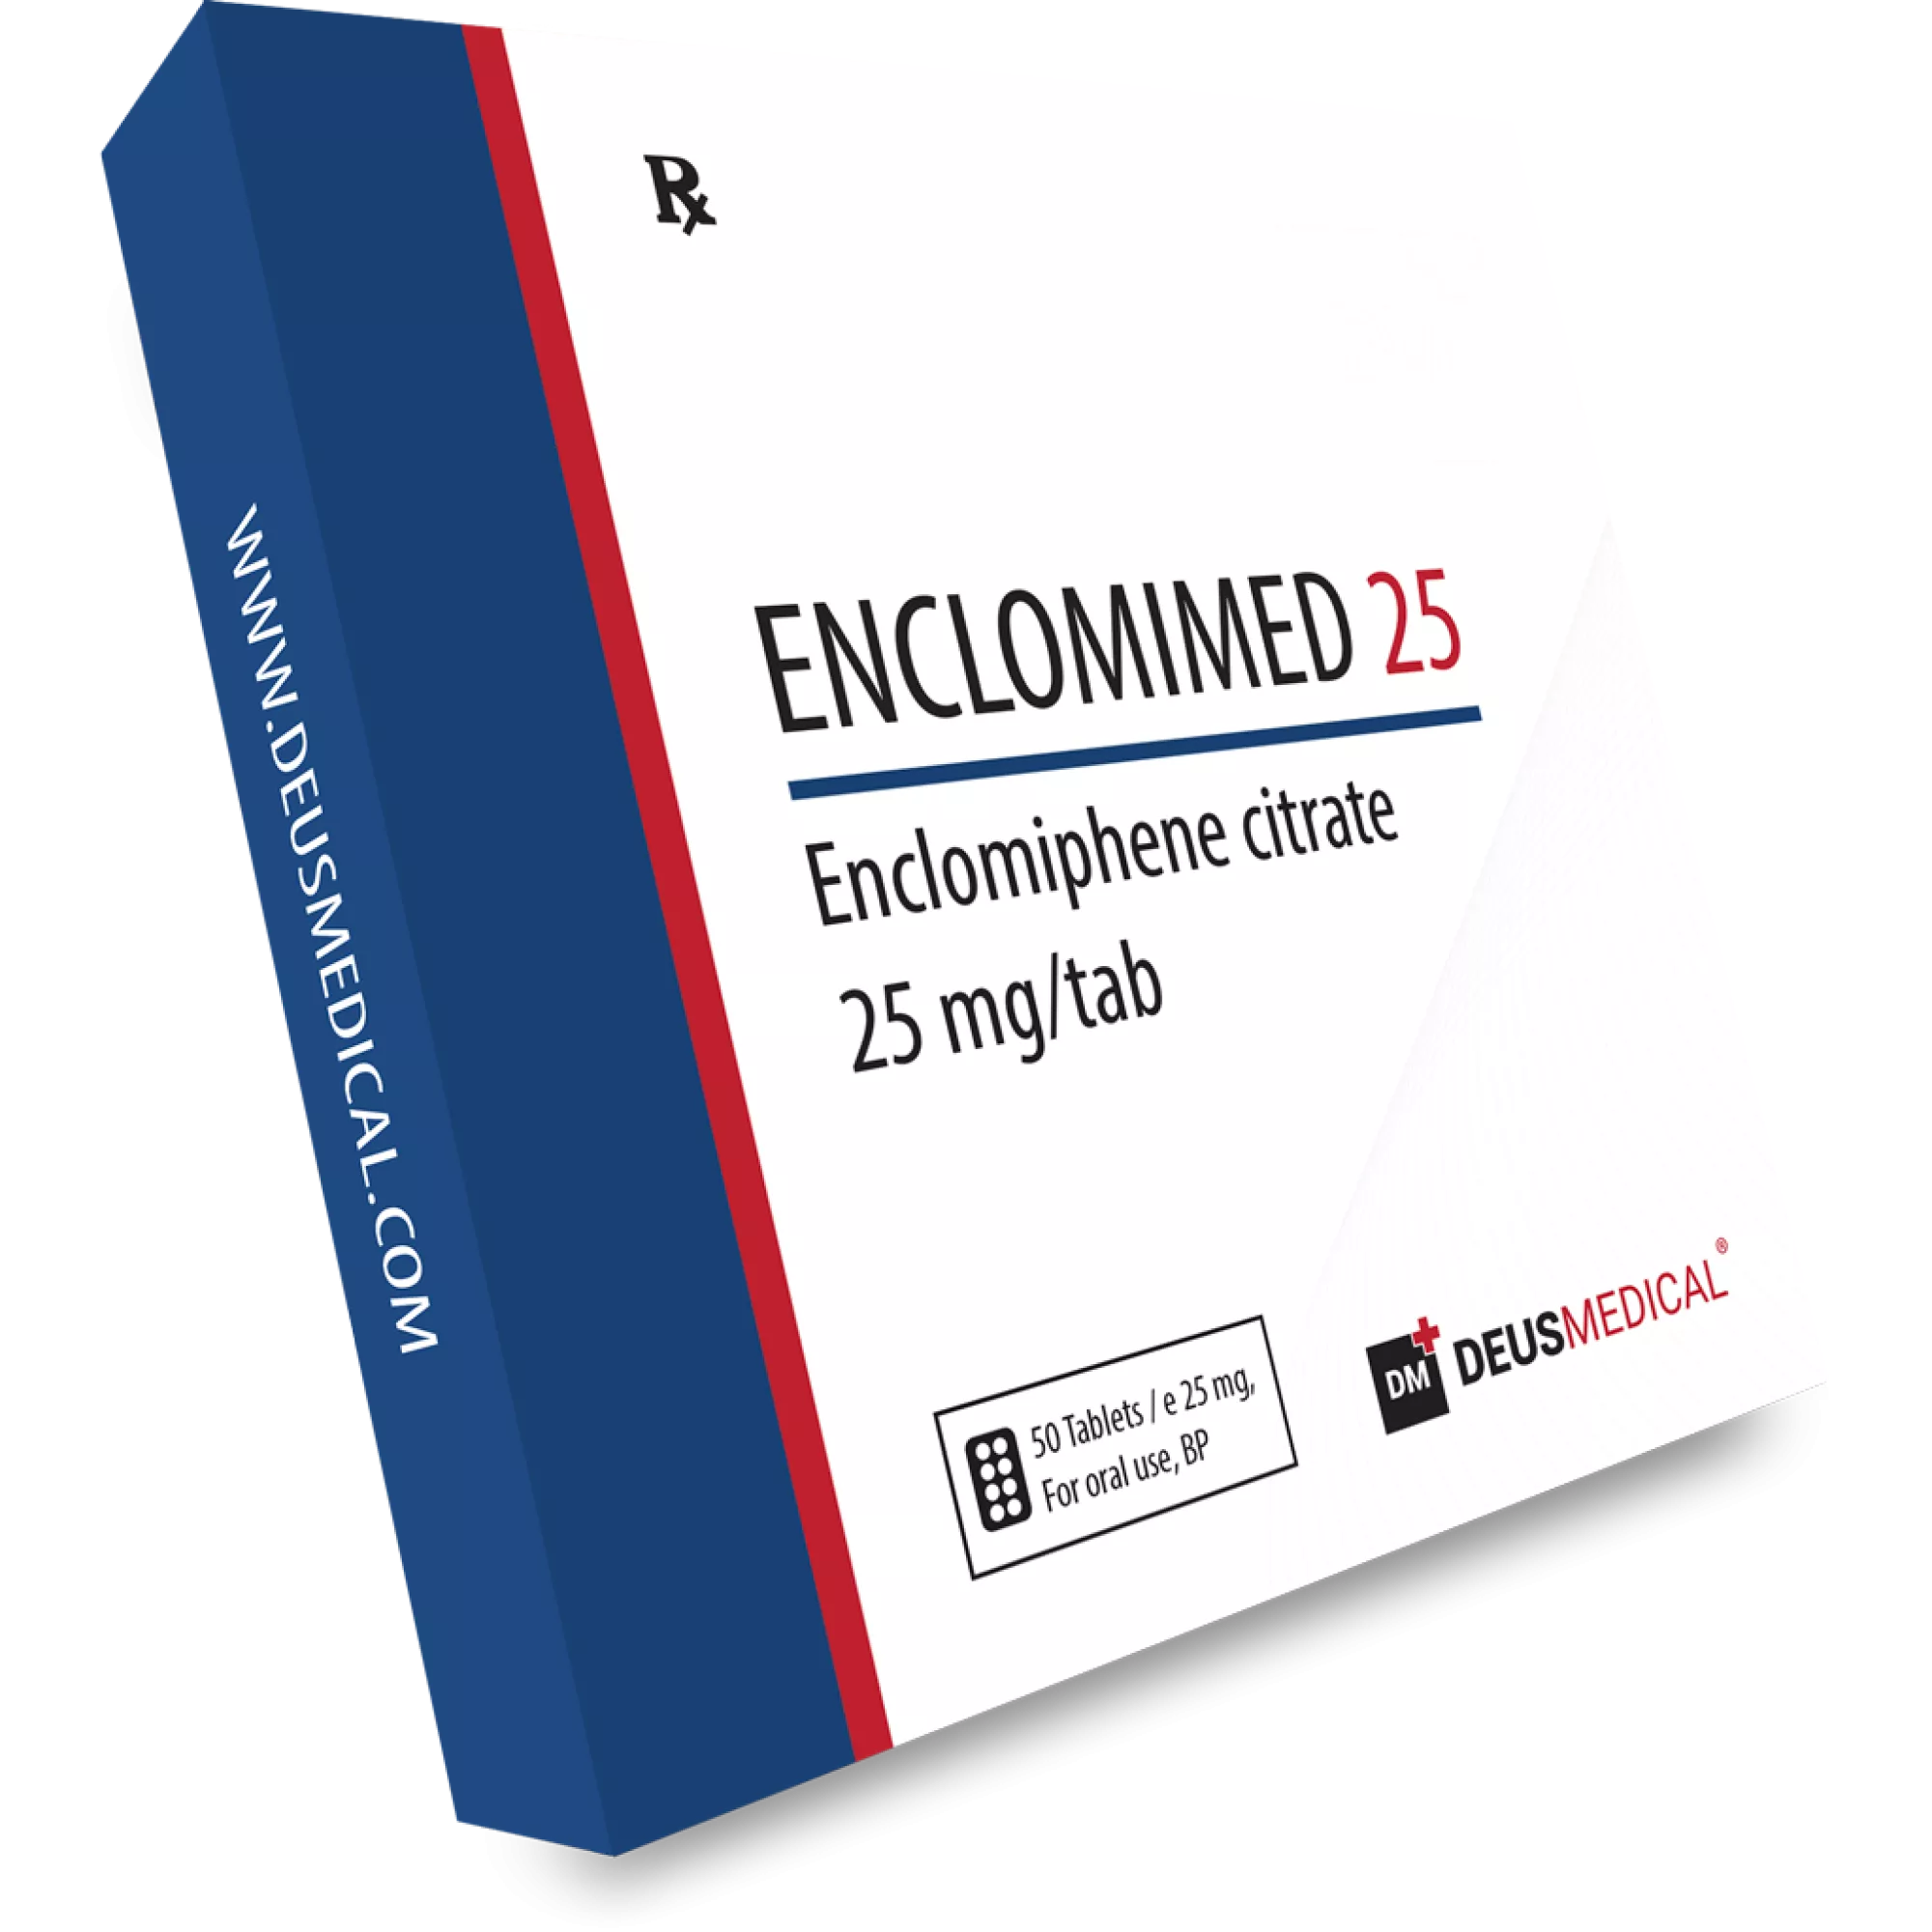 ENCLOMIMED 25 (Enclomiphene Citrate), Deus Medical, Köp steroider online - www.deuspower.shop